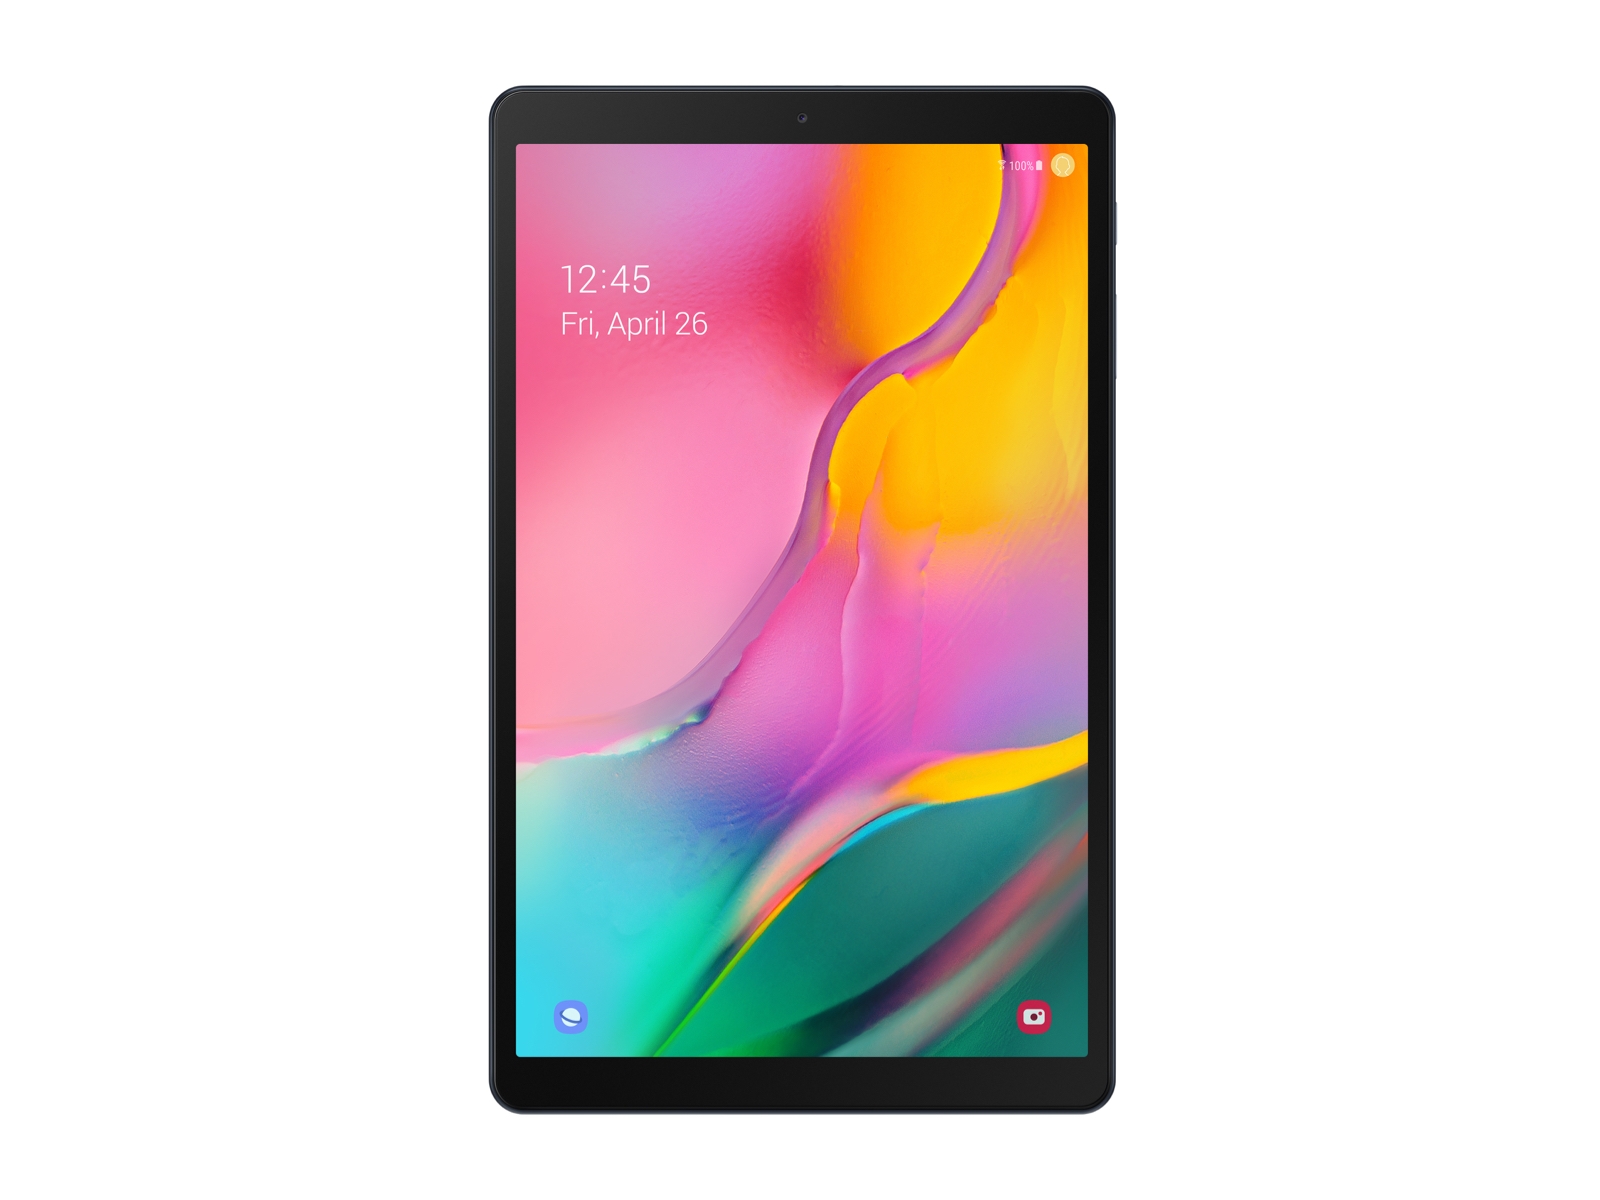 Galaxy Tab A 10.1 2019 32GB Silver Wi Fi Tablets - SM-T510NZSAXAR ...